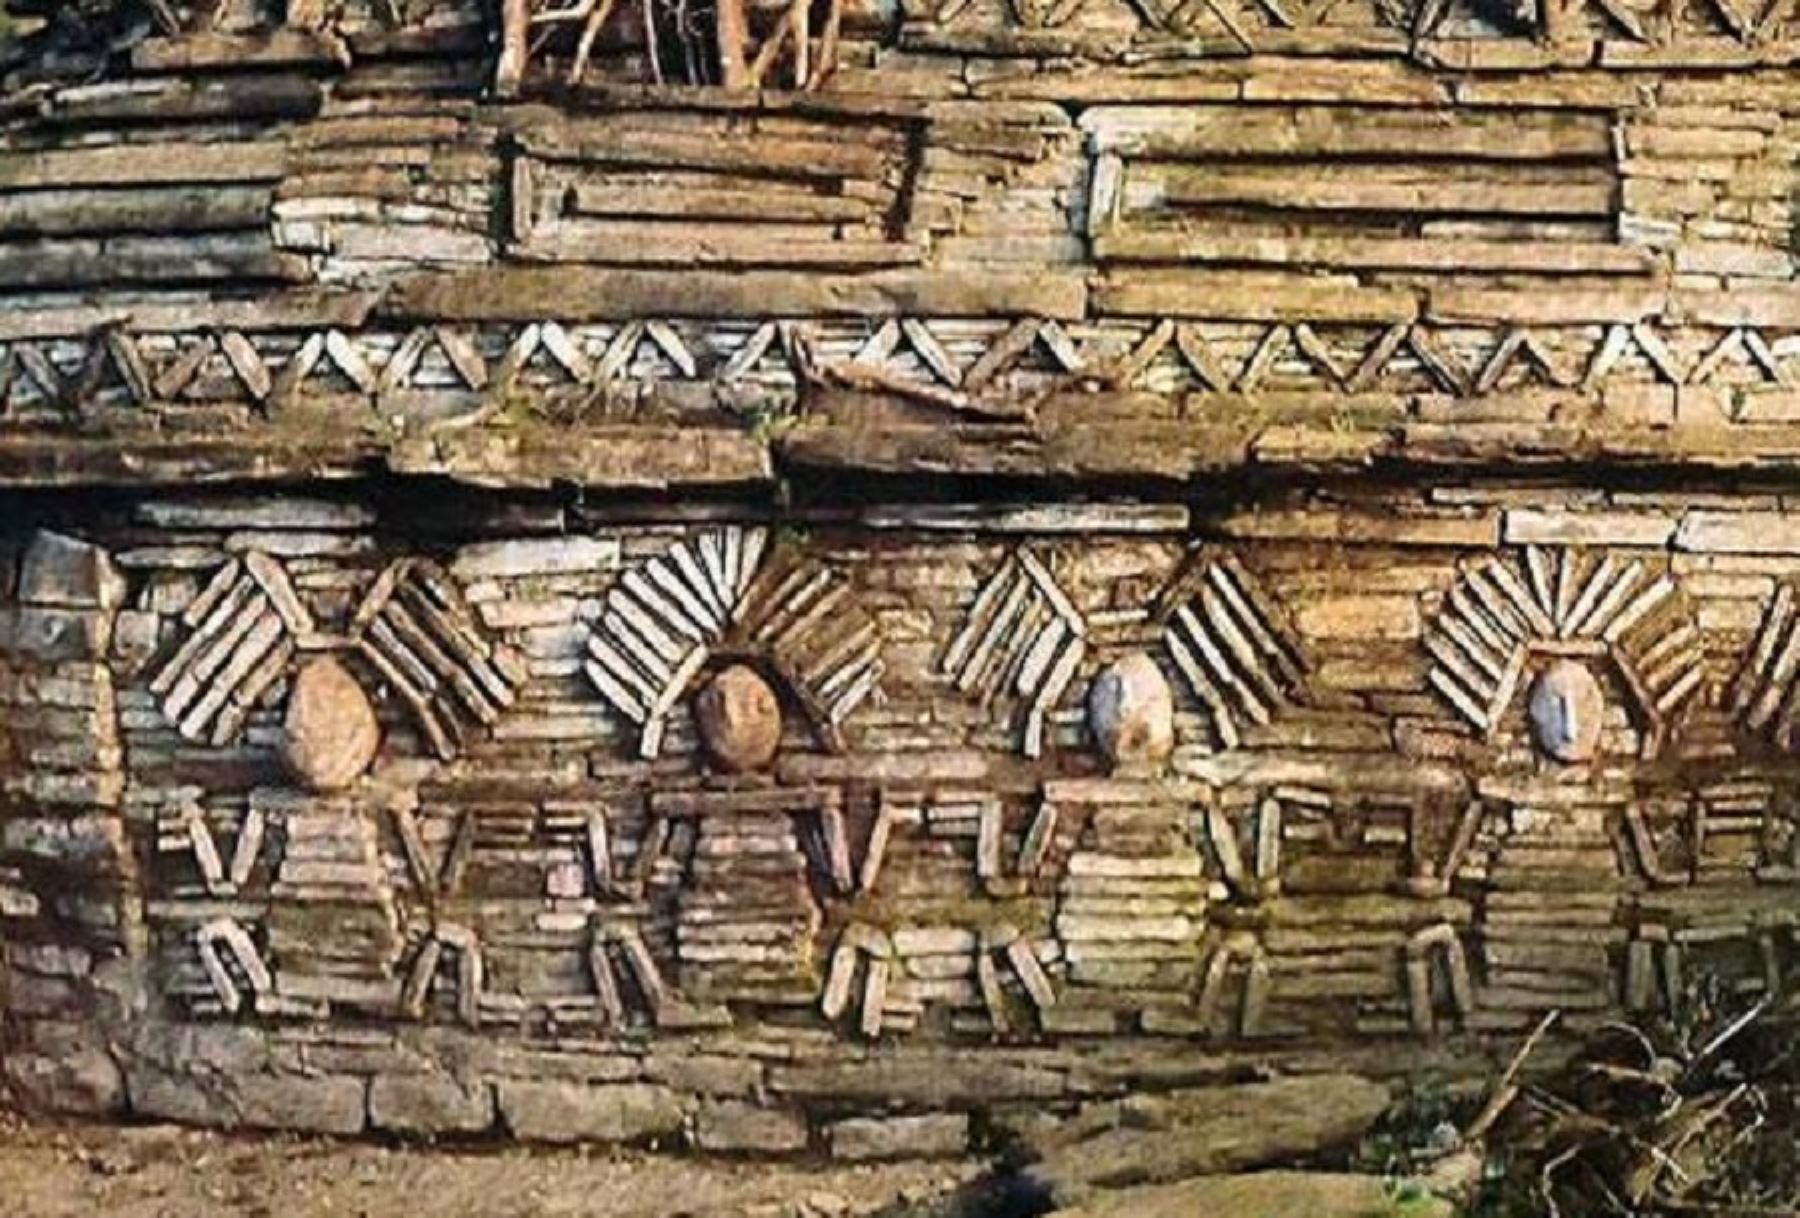 Los bosques húmedos y nubosos del Parque Nacional Río Abiseo, en la región San Martín, albergan uno de los más enigmáticos y singulares complejos arqueológicos descubiertos en la ceja de selva peruana: el Gran Pajatén, que al igual que Kuélap constituye una de las construcciones más representativas de la cultura Chachapoya.